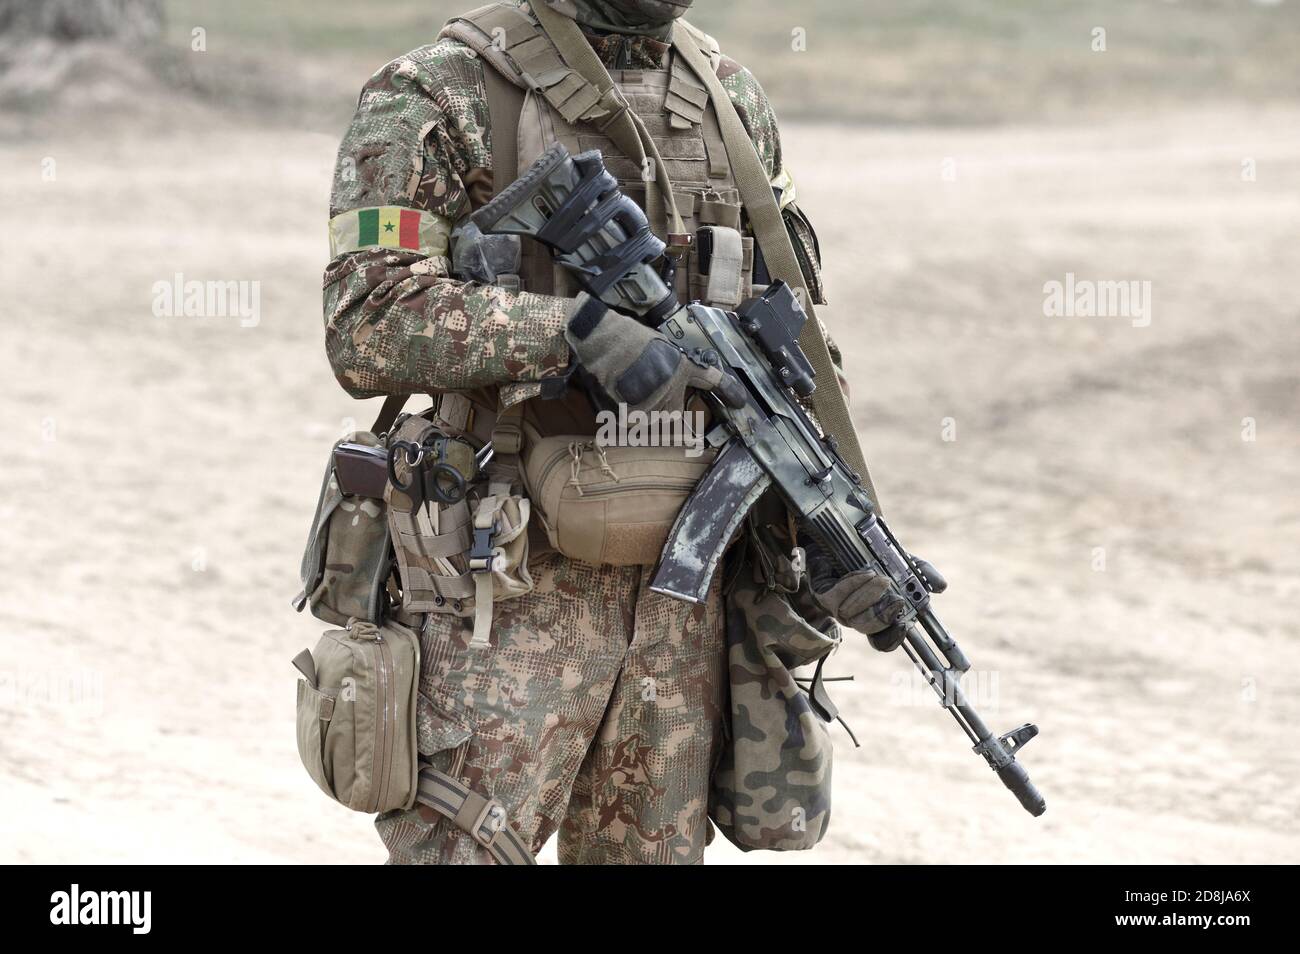 Soldat avec fusil d'assaut et drapeau du Sénégal sur l'uniforme militaire.  Collage Photo Stock - Alamy